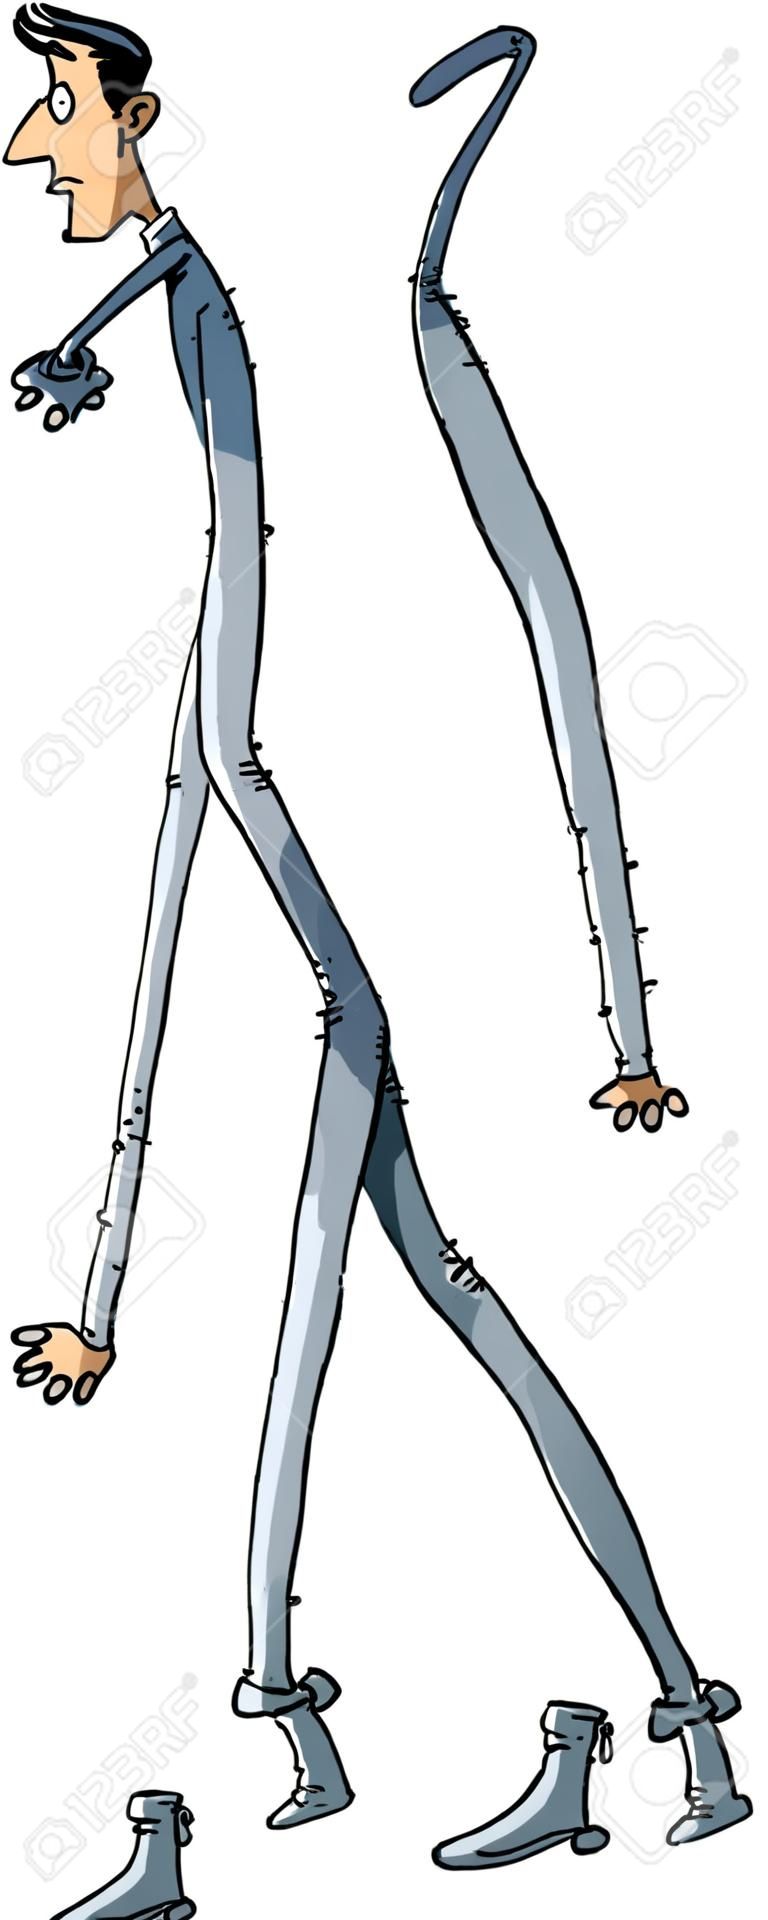 Cartoon człowiek z bardzo długimi nogami.